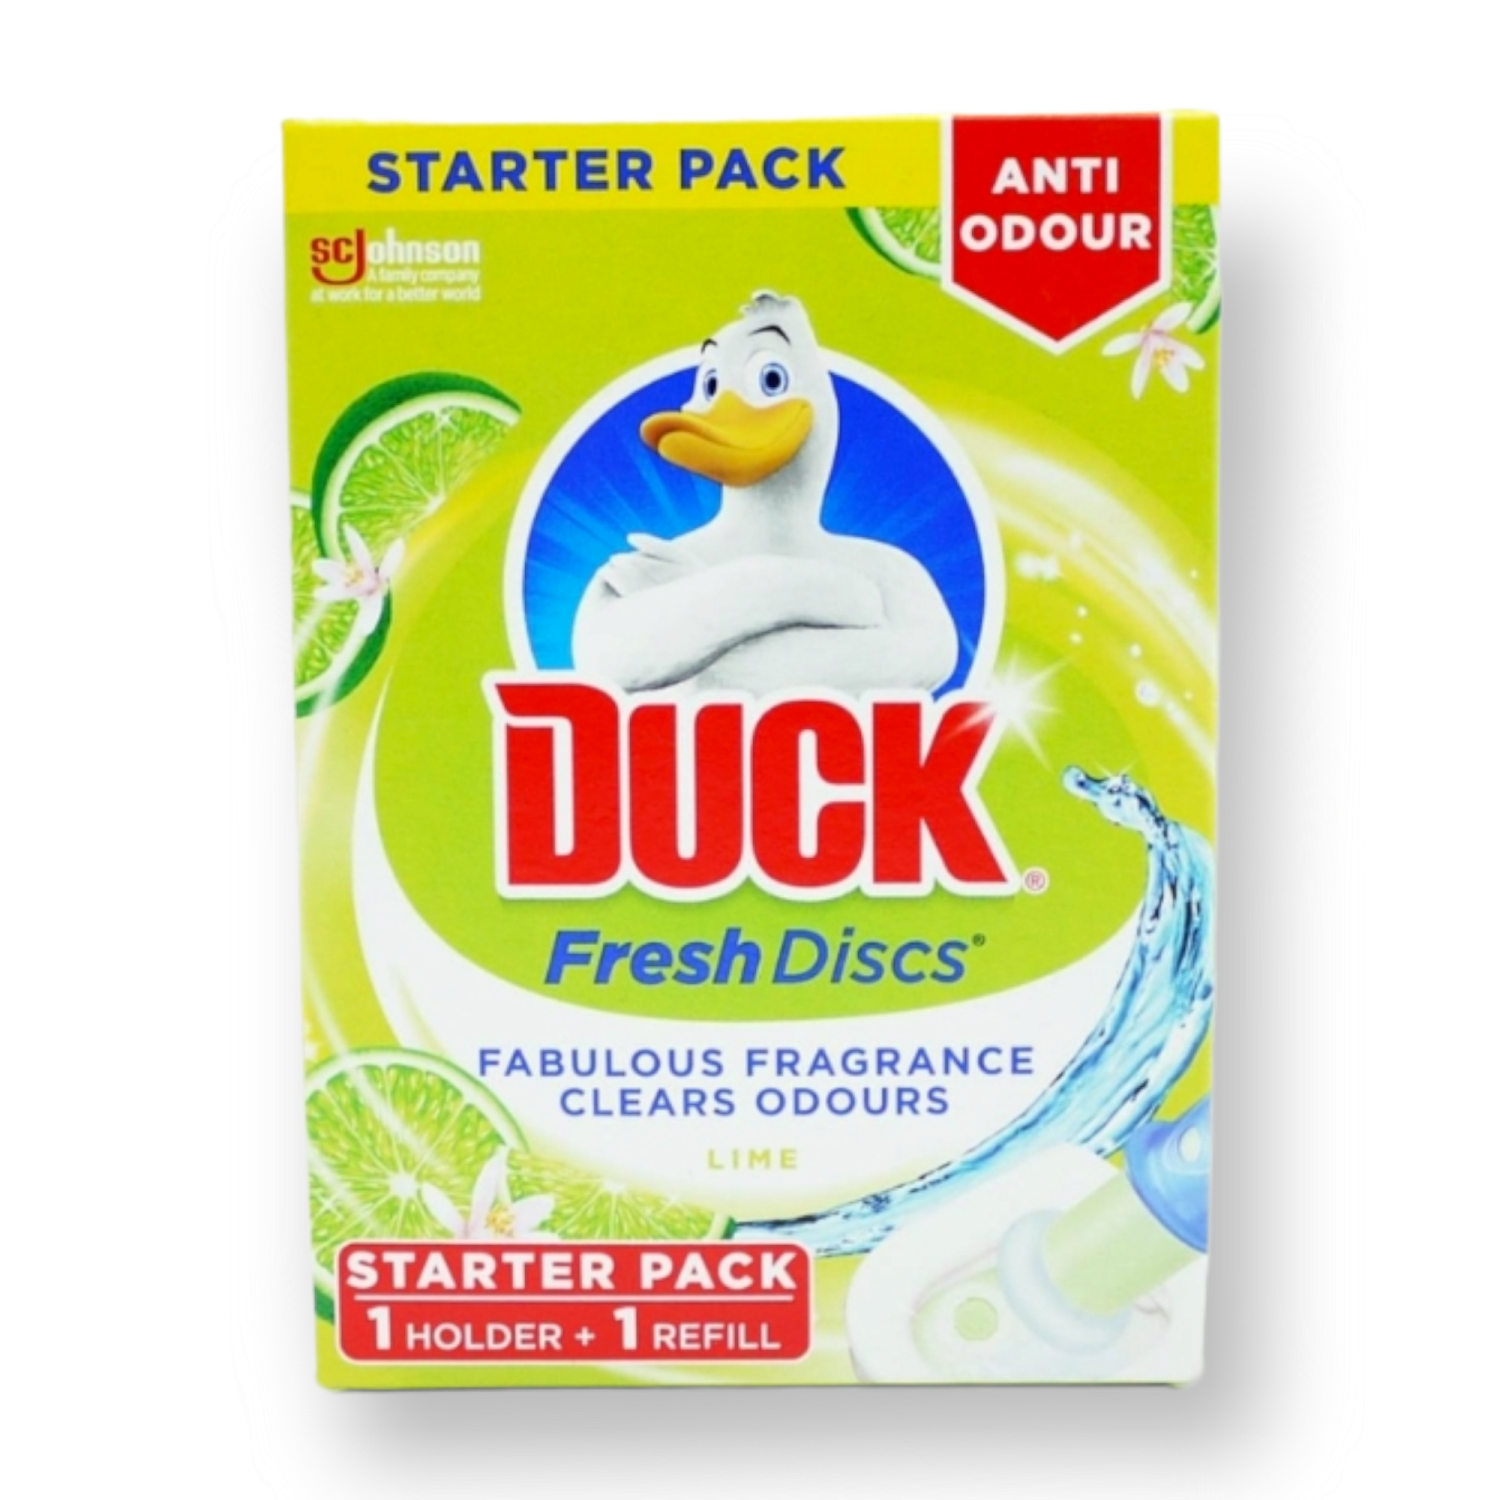 Duck Lime Zest Fresh Discs Toilet Cleaner Starter Pack